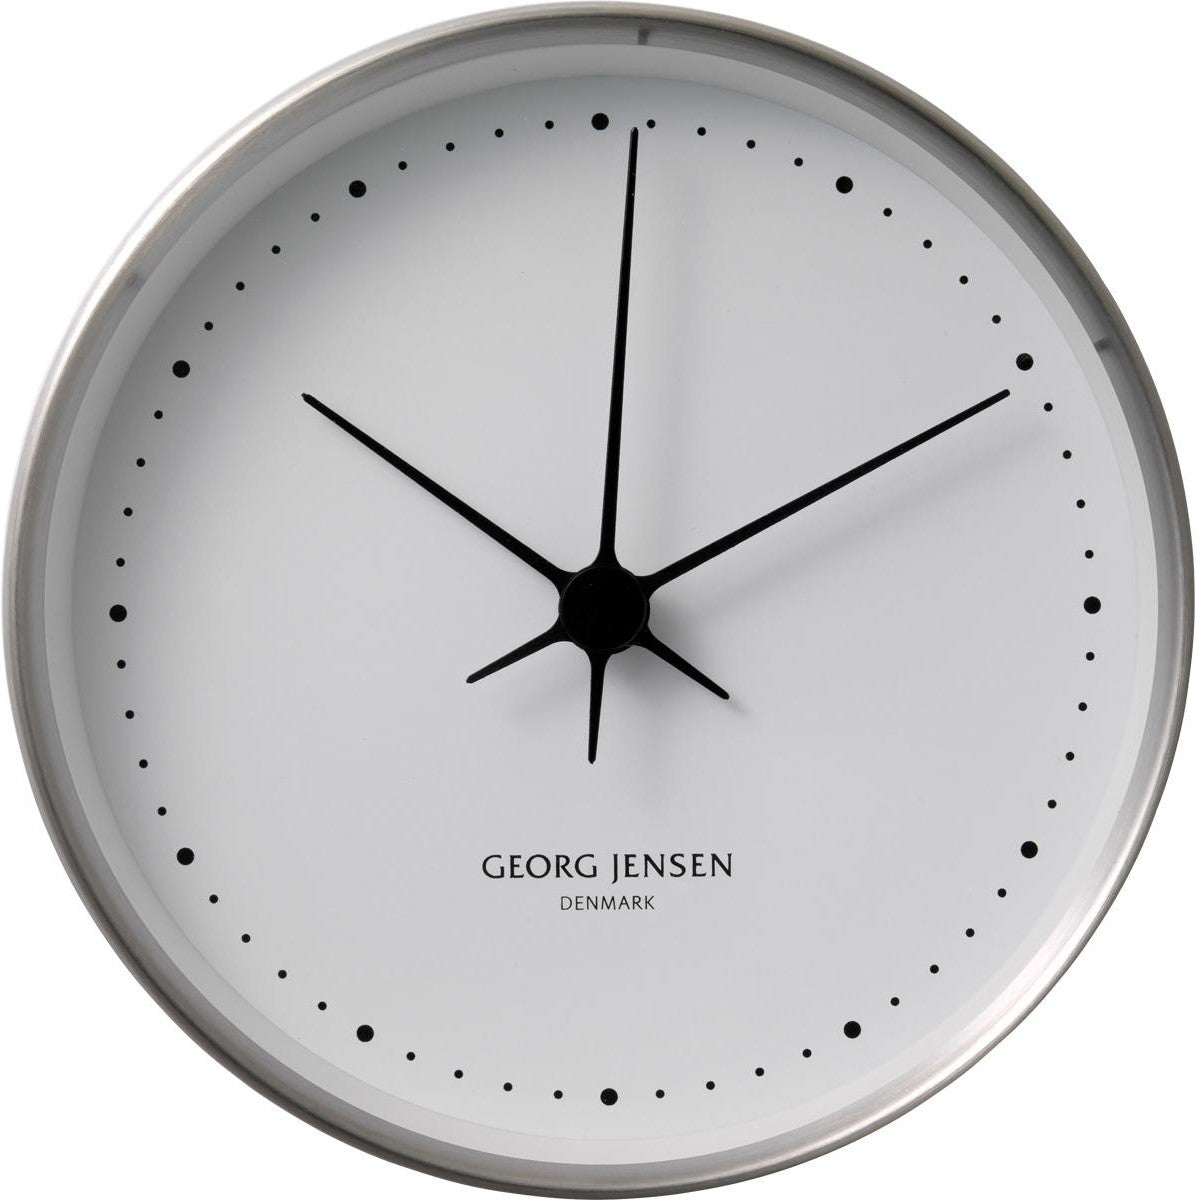 Georg Jensen Hk Wall Clock Stainless Steel/White, 10 Cm